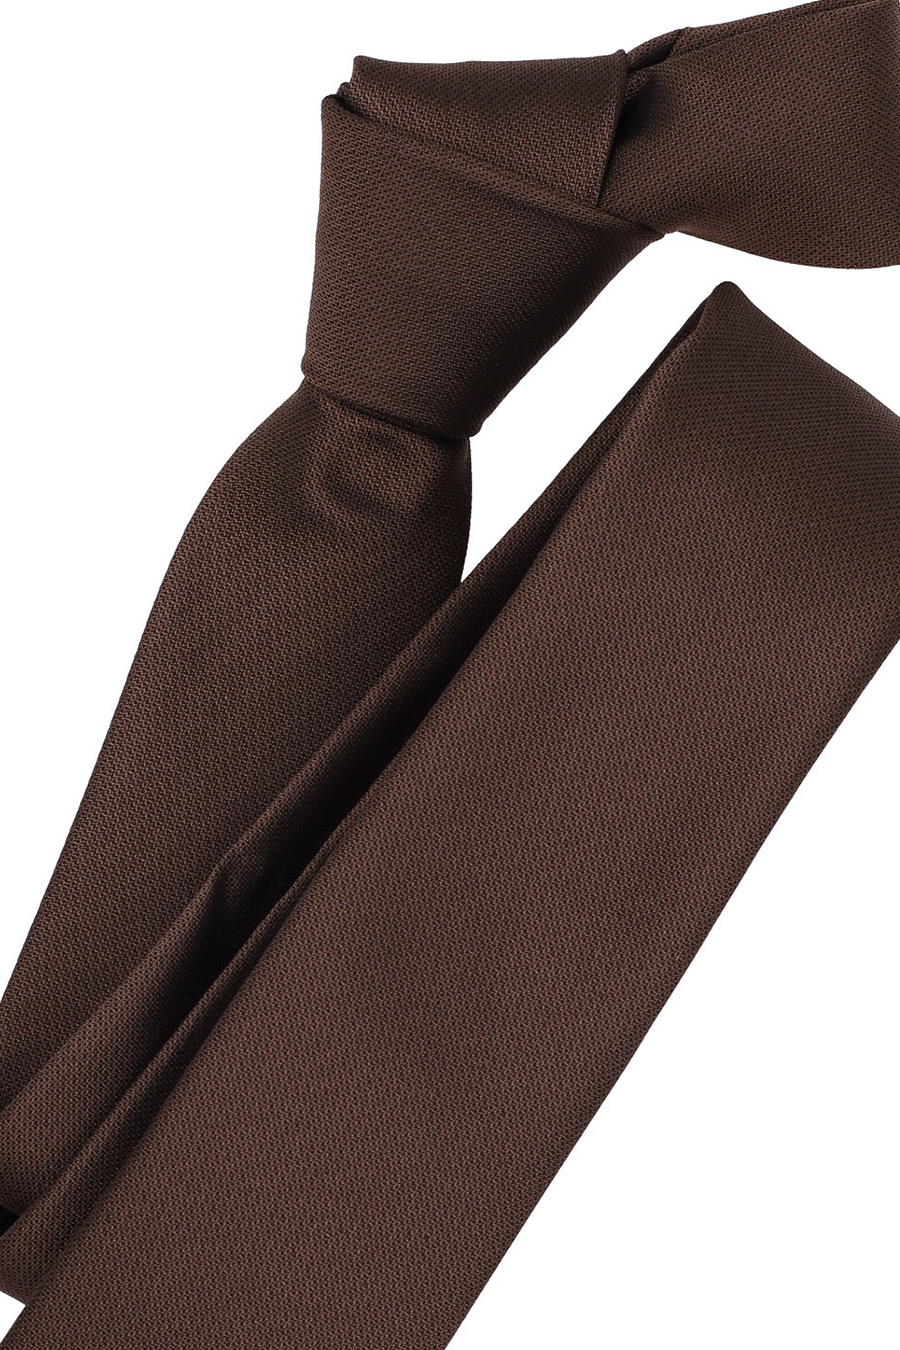 5 VENTI breit Polyester cm aus braun Seide Krawatte und